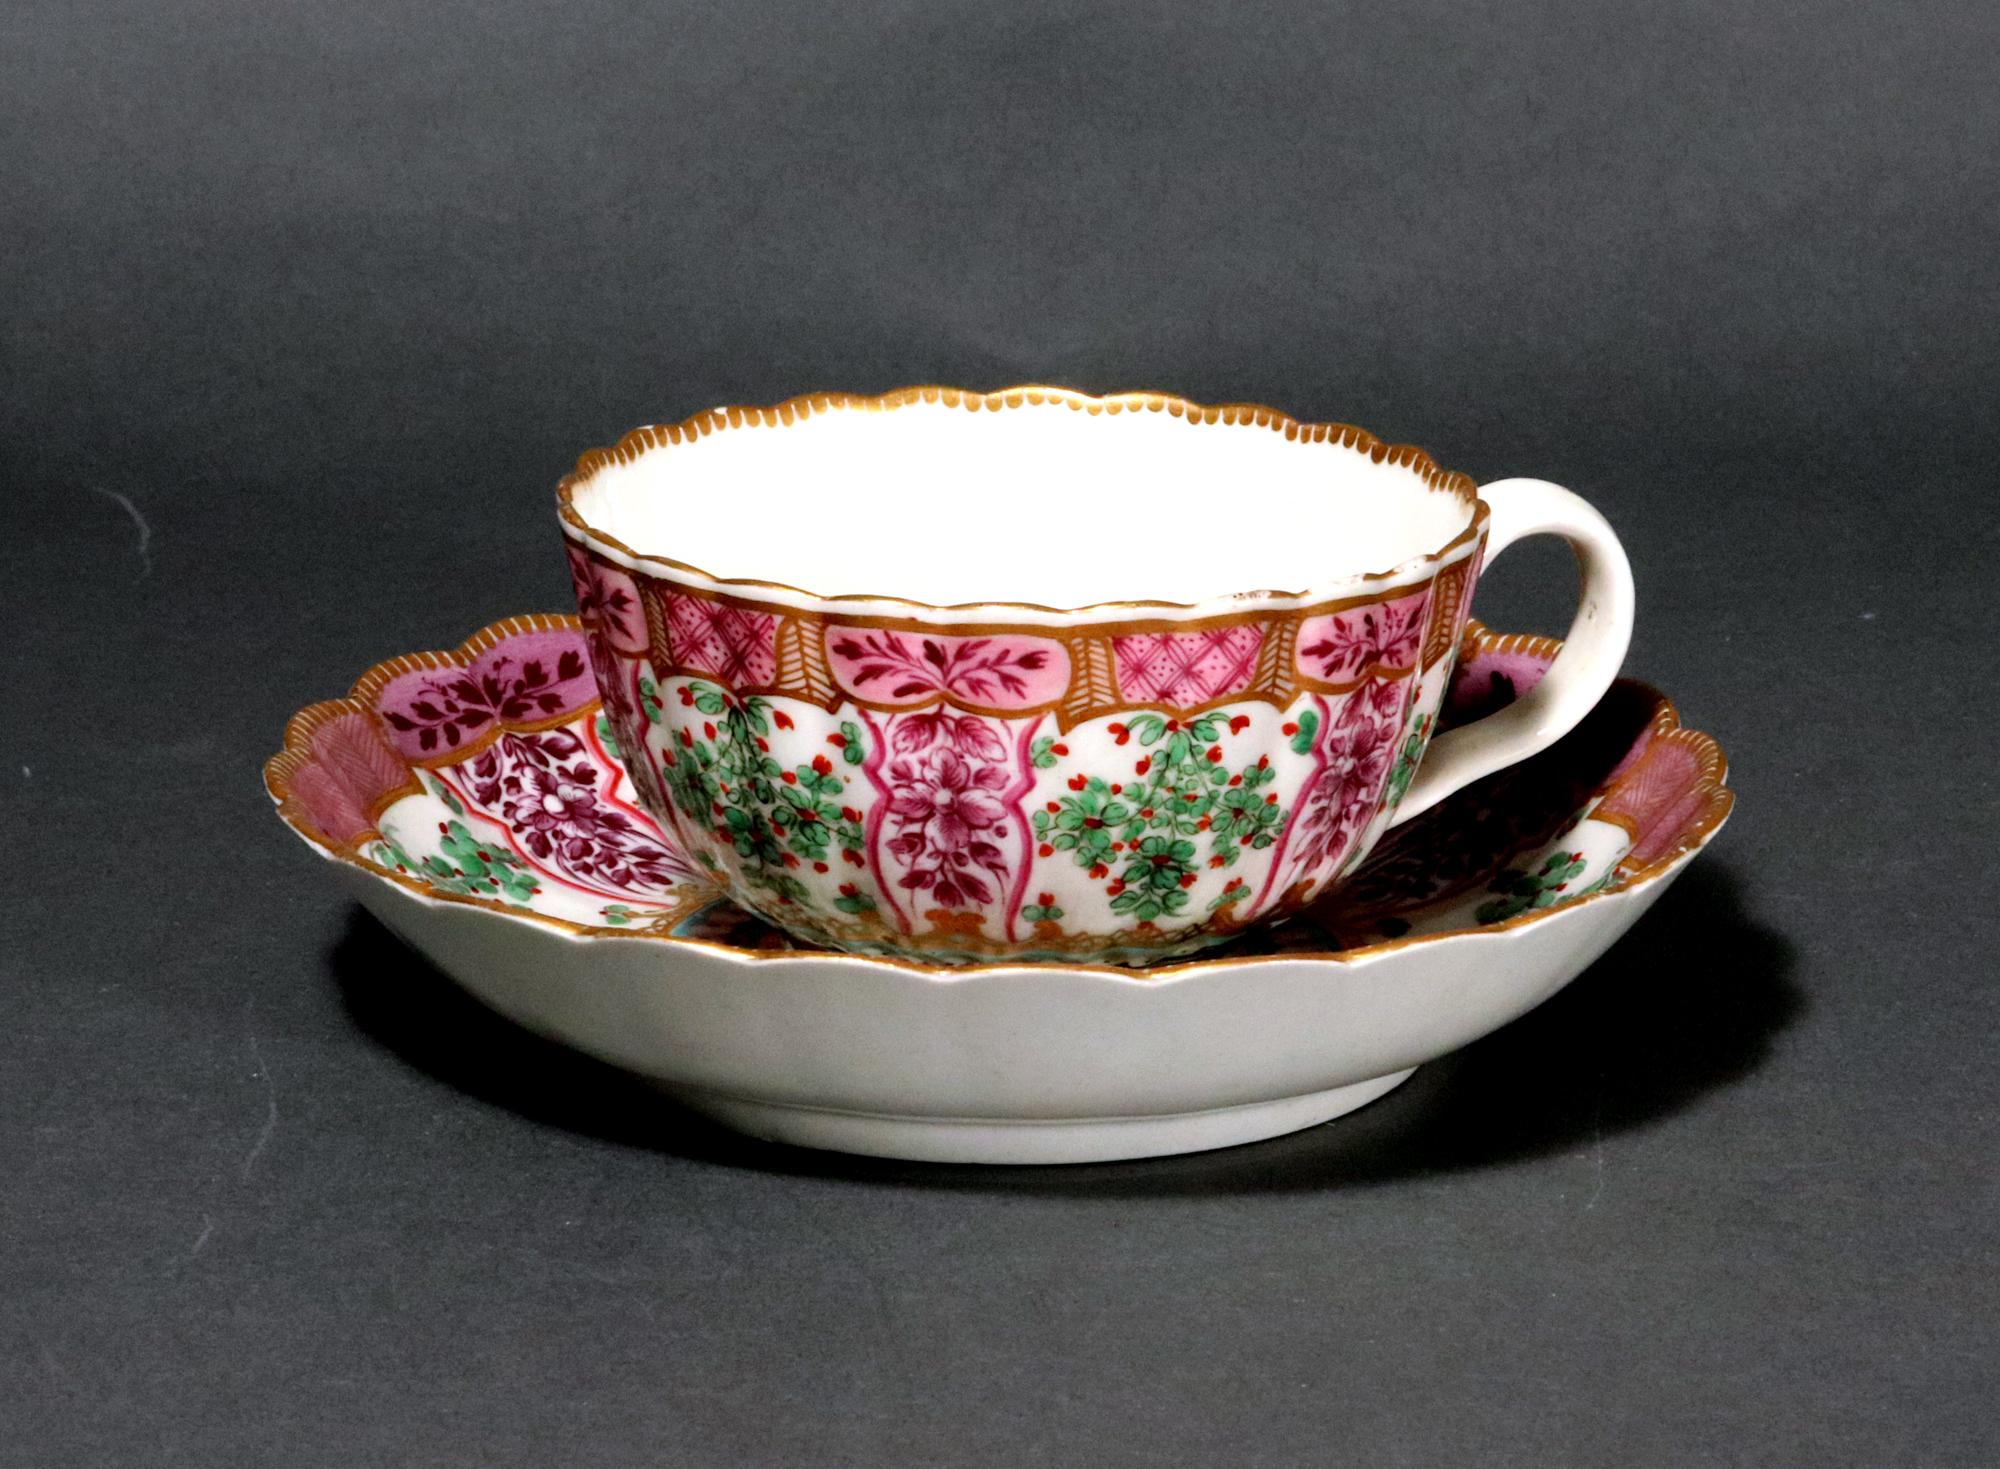 Erste Periode Worcester Porzellan Holly Berry Pattern Teetasse und Untertasse, Hop Trellis Pattern, 
Circa 1775.

Die Teetasse mit Untertasse aus Worcester-Porzellan aus der Ersten Periode hat eine geriffelte französische Form und ist reich mit dem